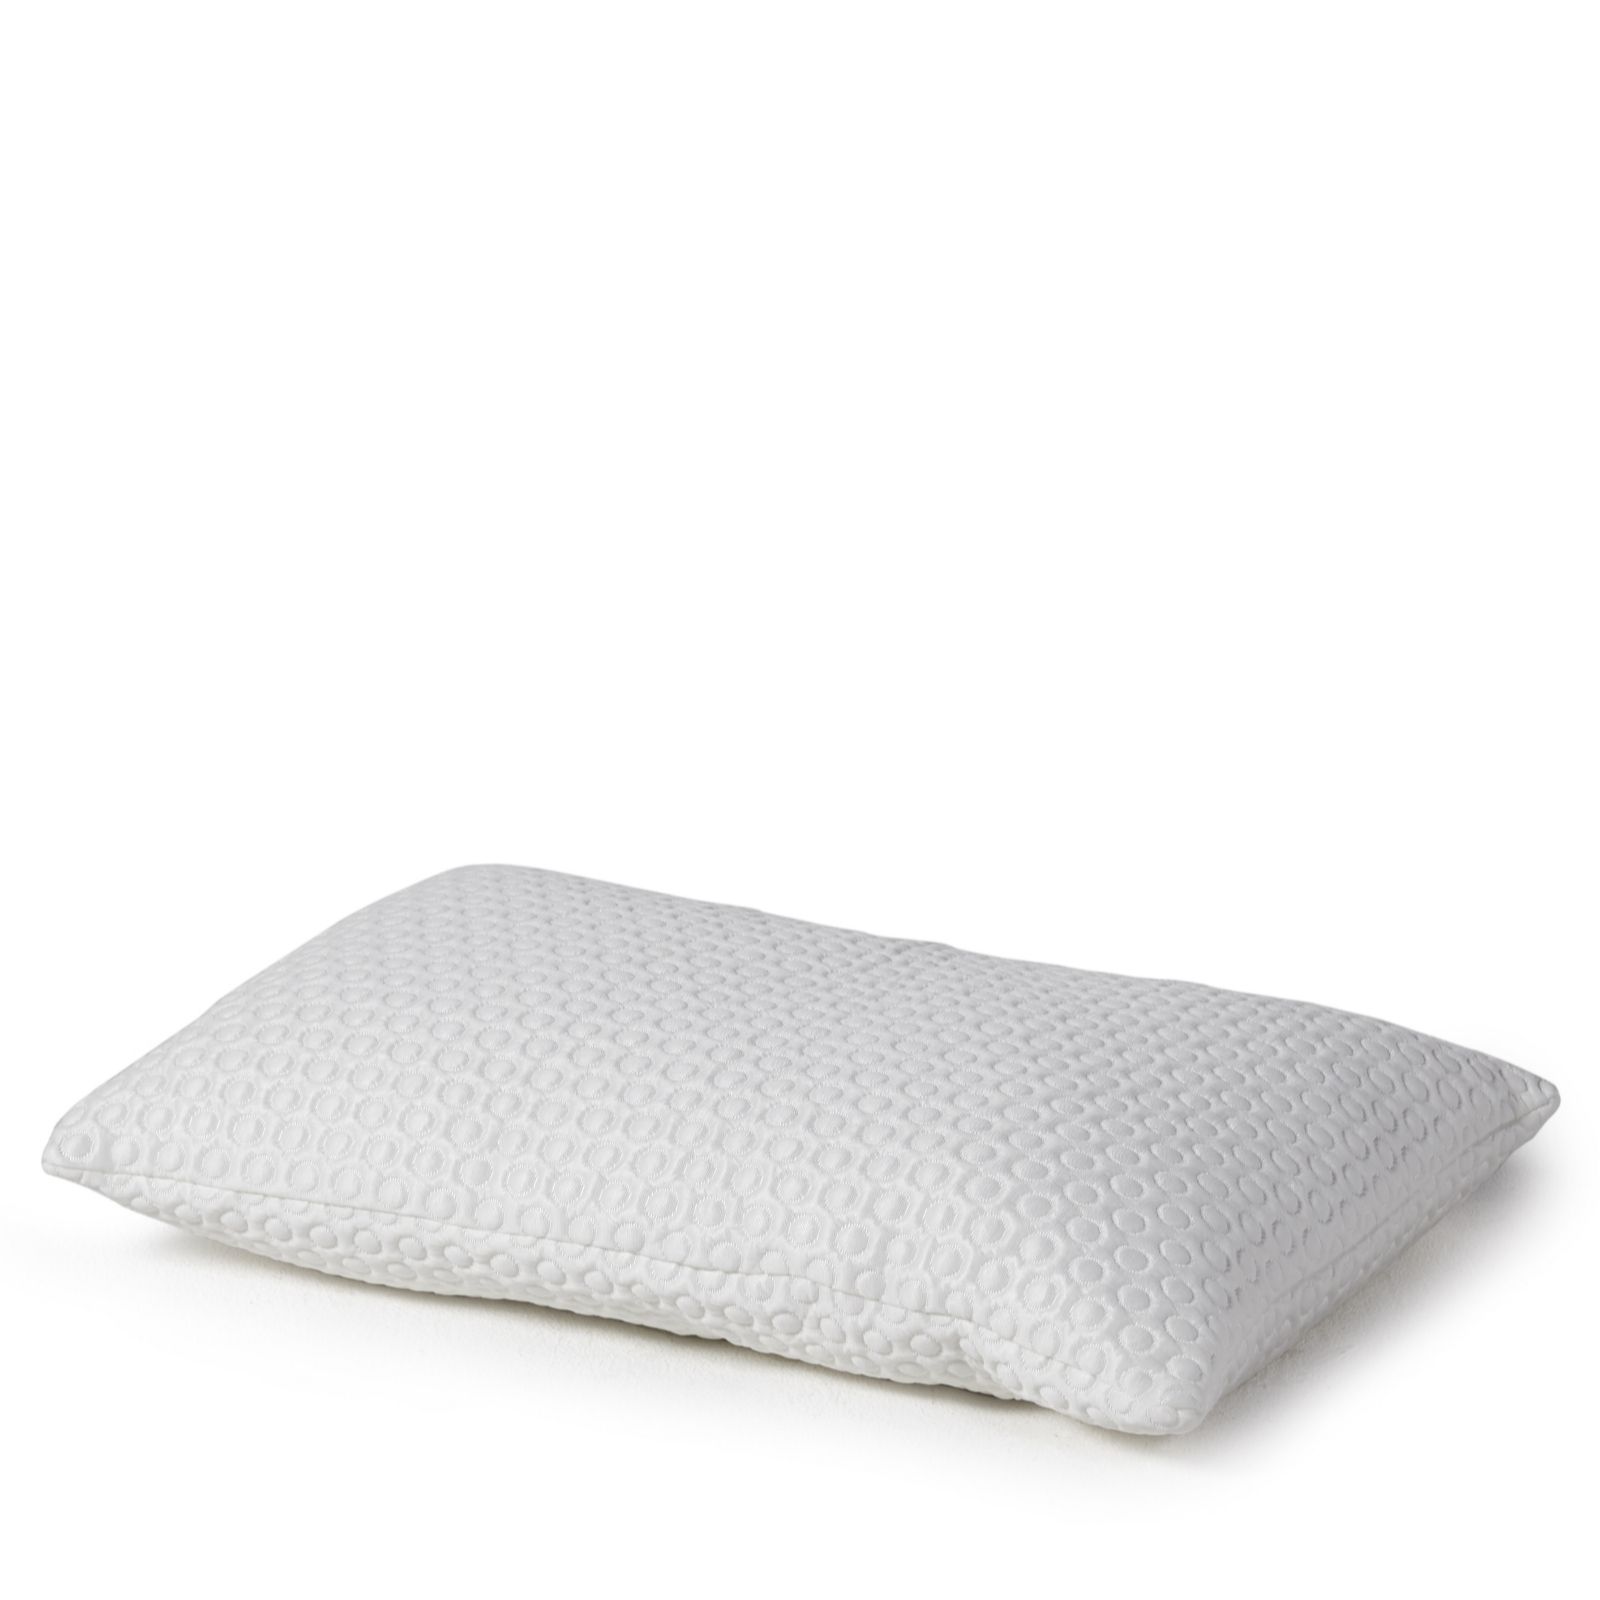 Tempur Comfort Cloud Pillow - QVC UK